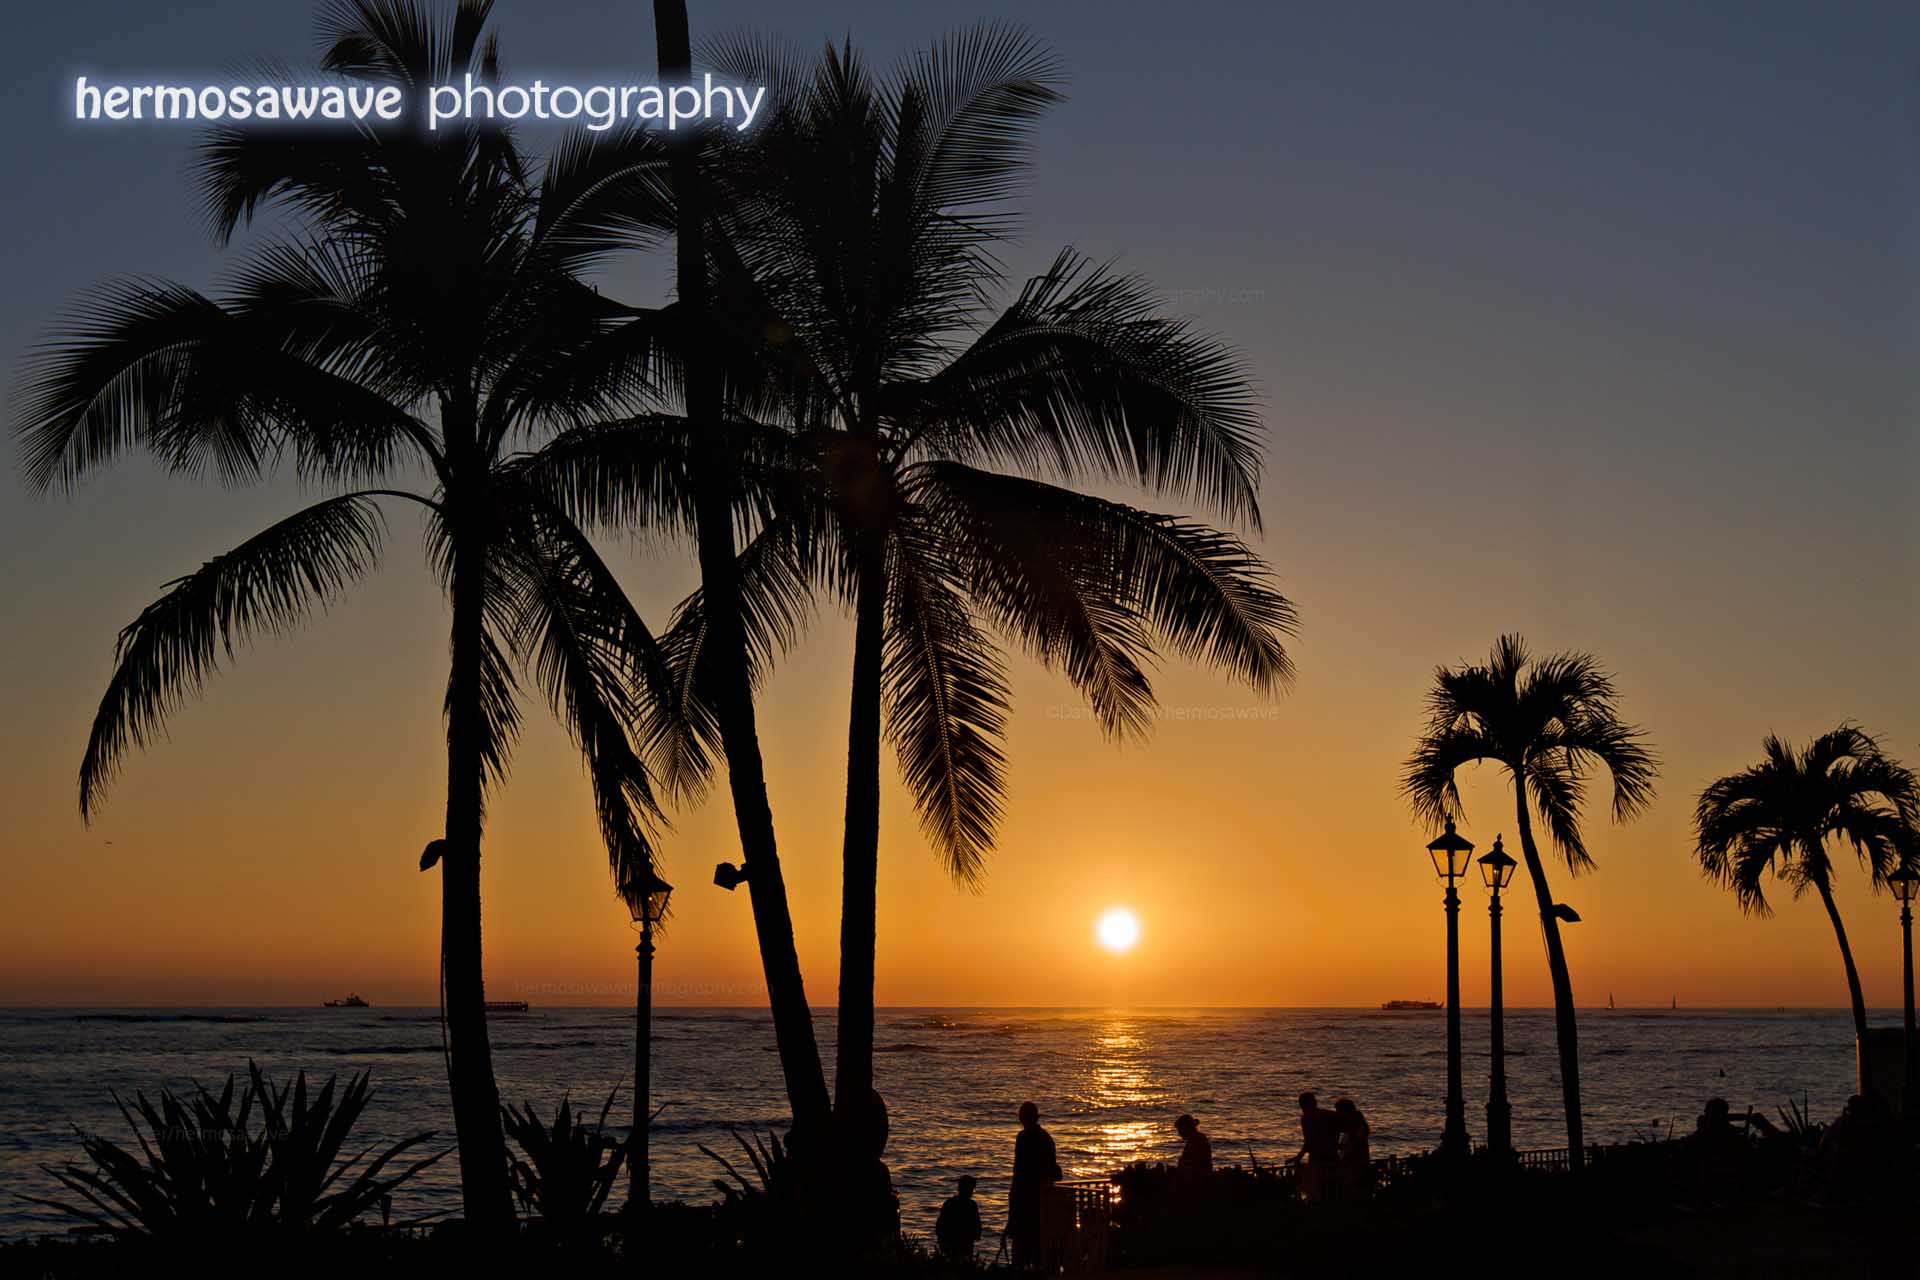  Another Waikiki Sunset